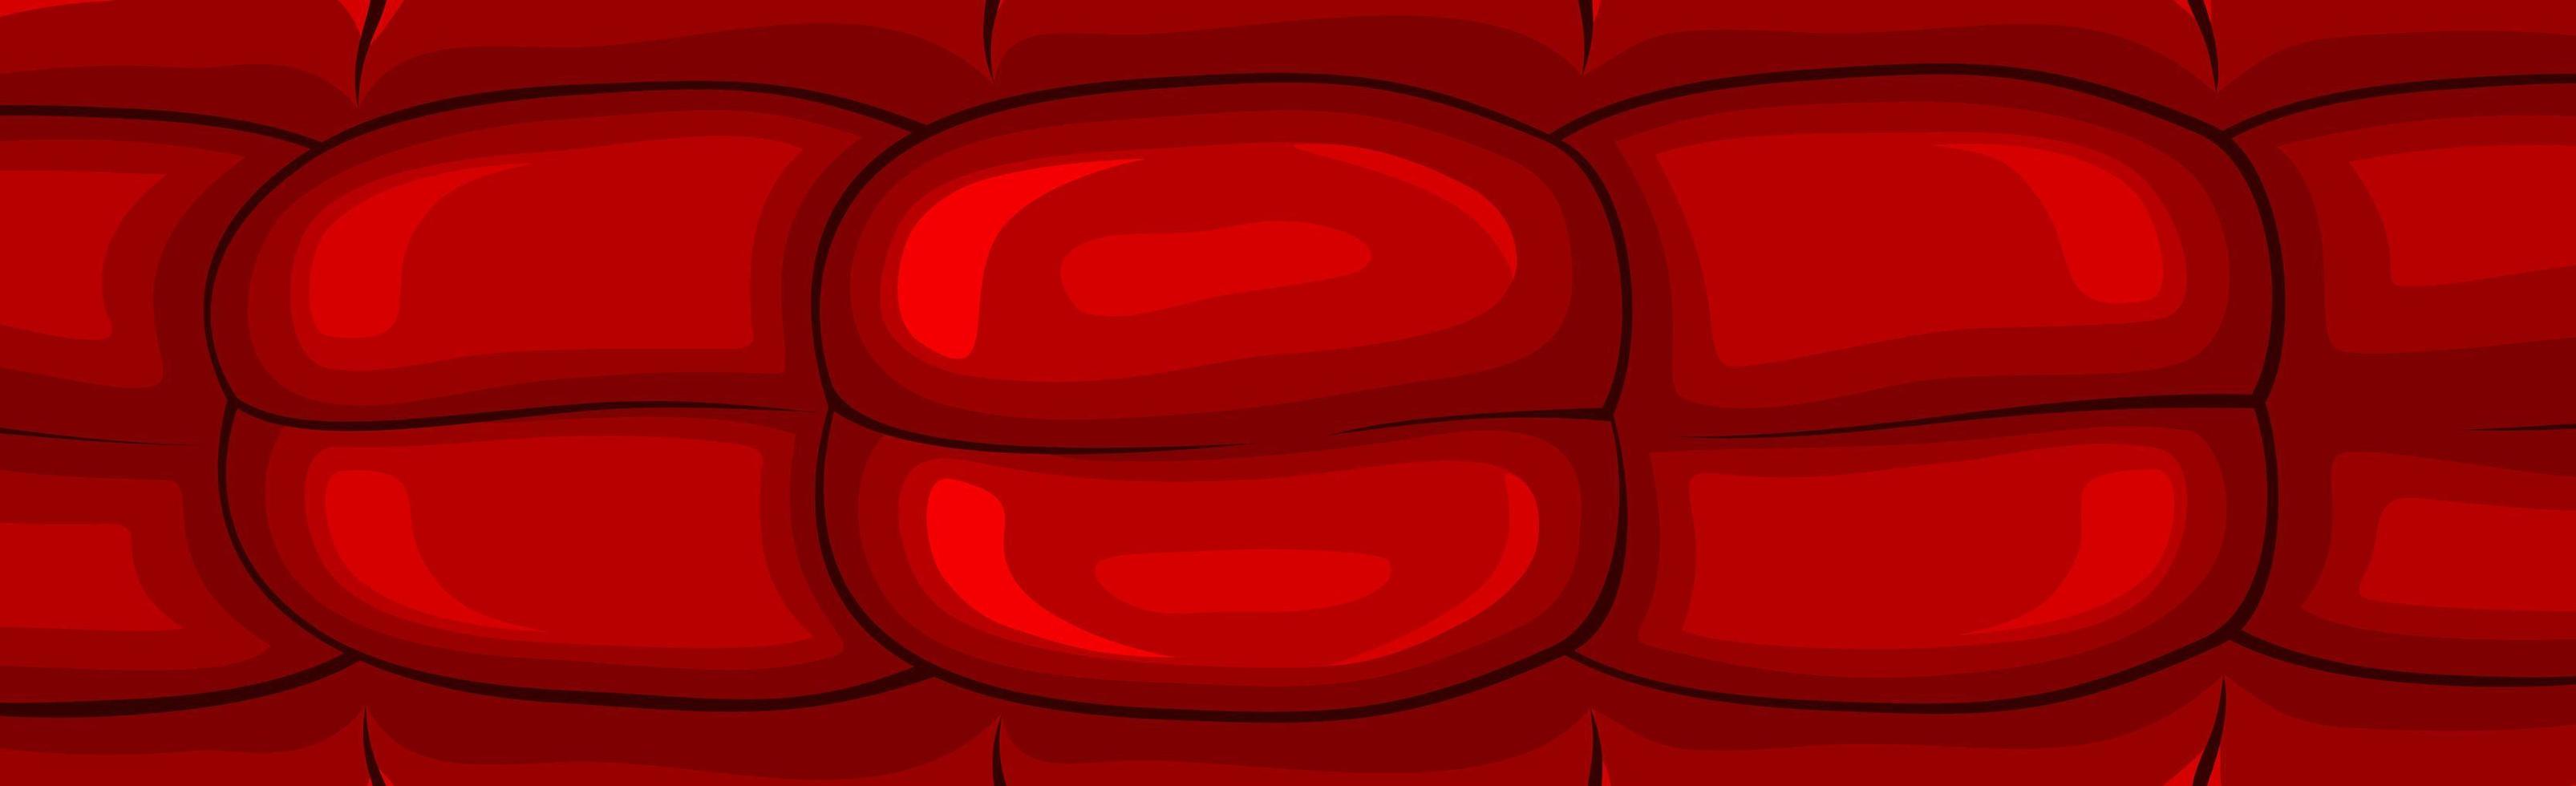 Panoramic red fresh salami sausage pattern - Vector